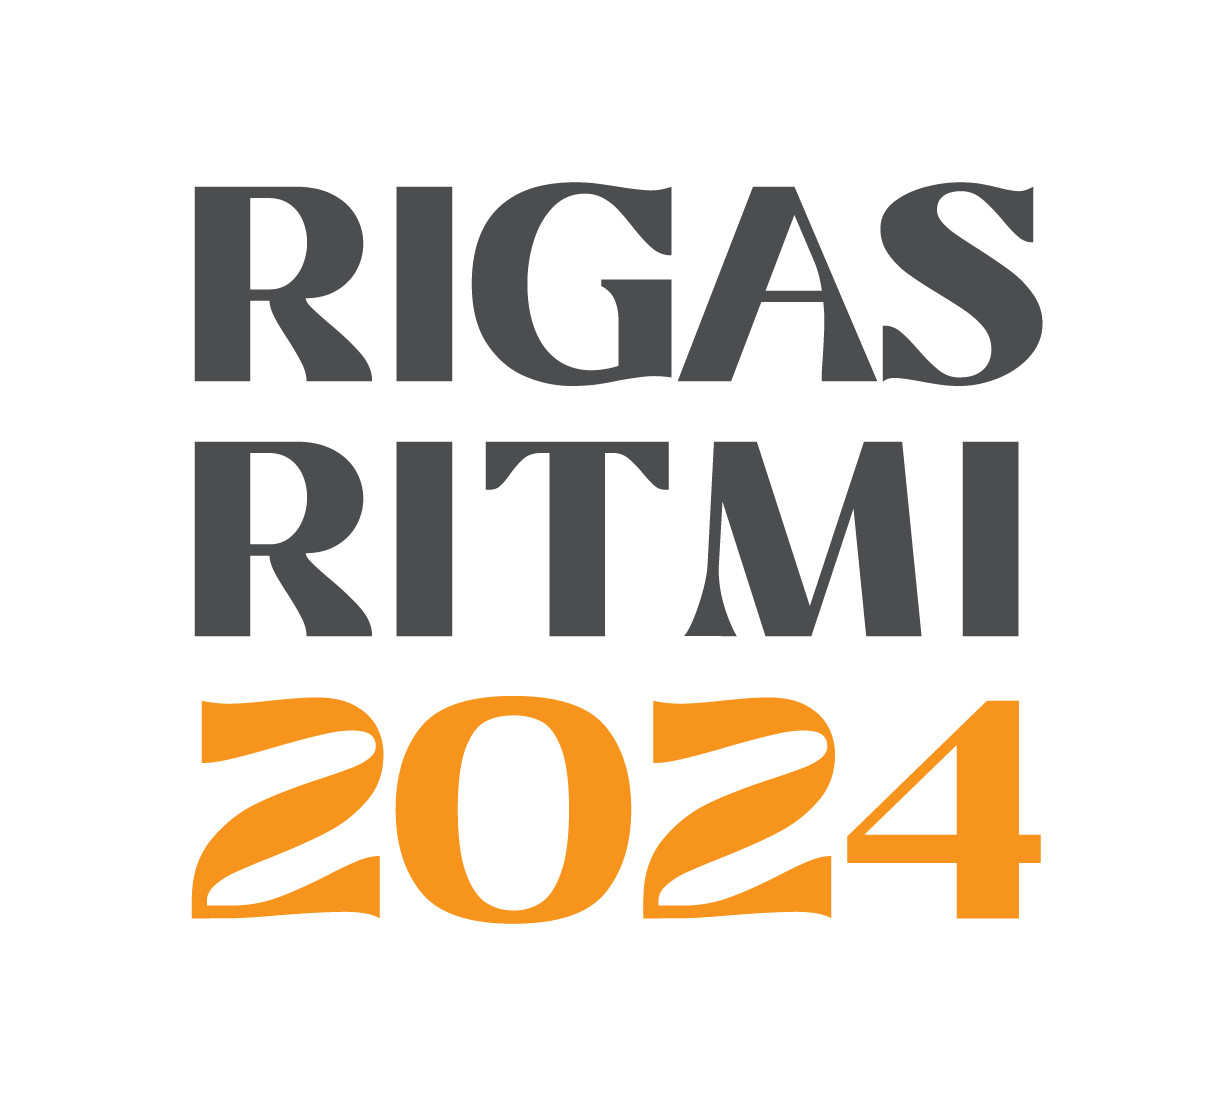 Festivāls “Rīgas Ritmi” atkārtoti saņēmis Eiropas festivālu asociācijas kvalitātes zīmi